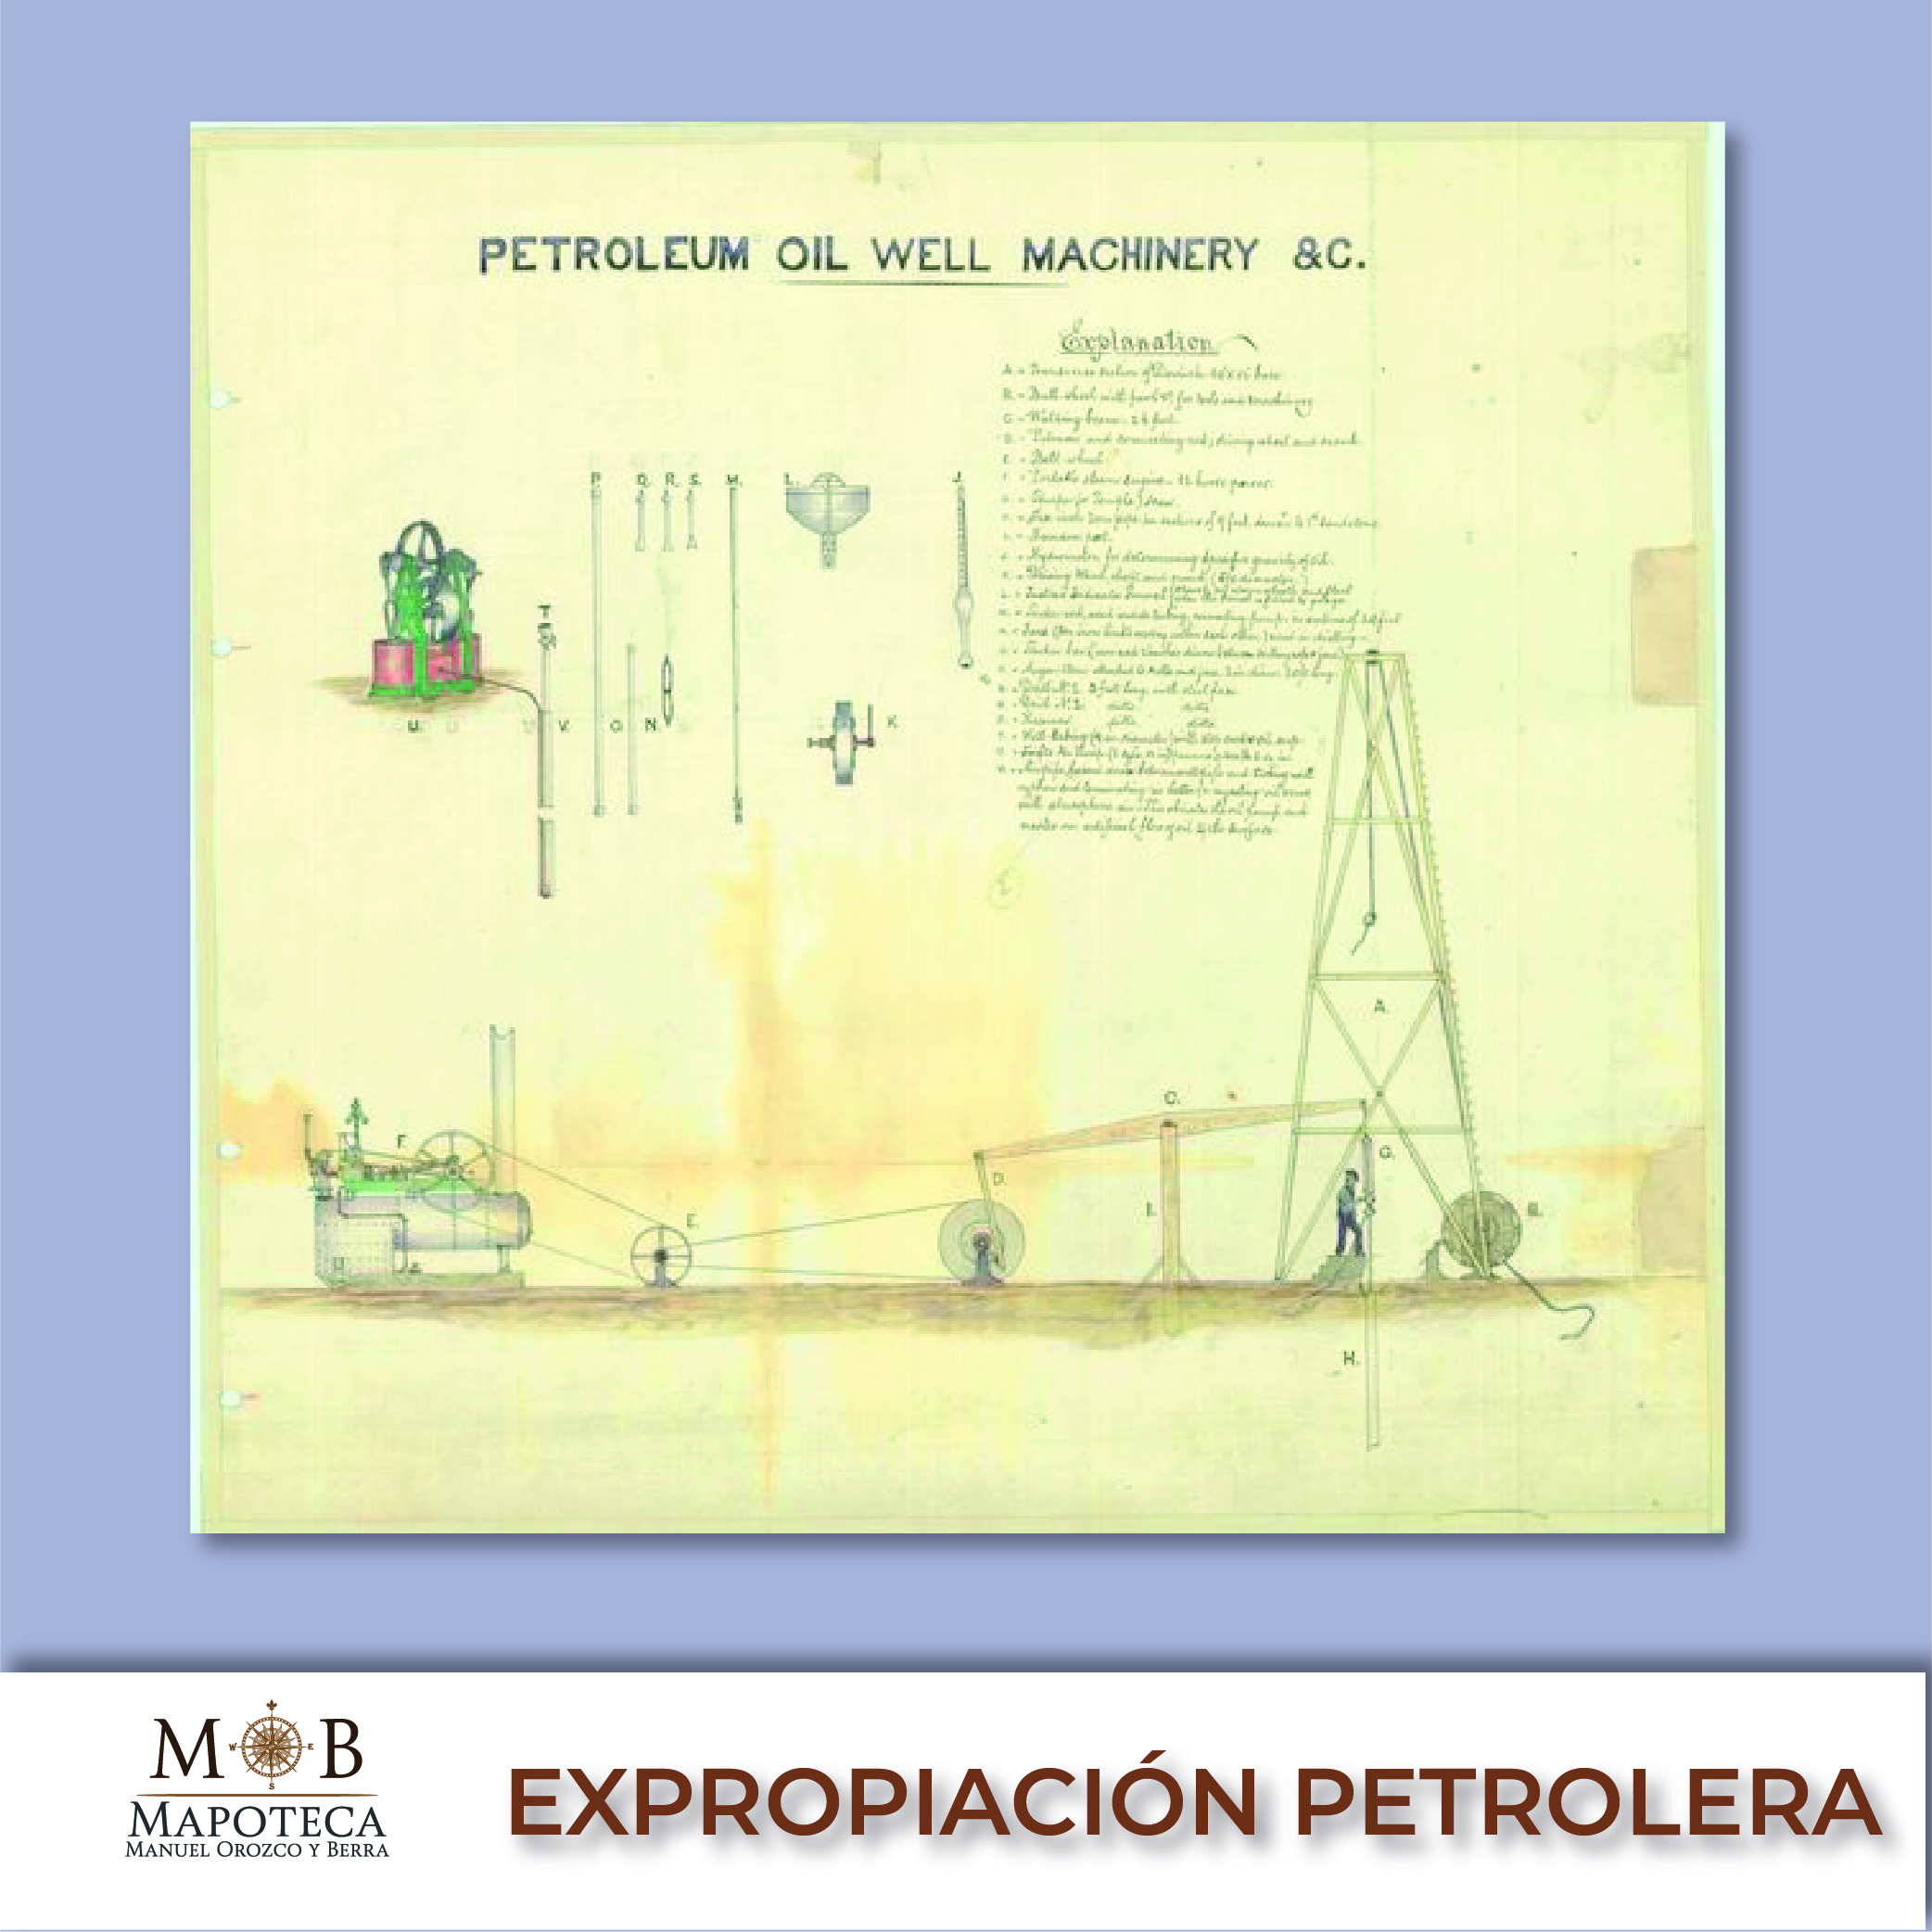 Para recordar un año más del aniversario de la Expropiación Petrolera, la Mapoteca Manuel Orozco y Berra presenta esta imagen titulada: “Plano de la maquinaria para pozos de petróleo”.